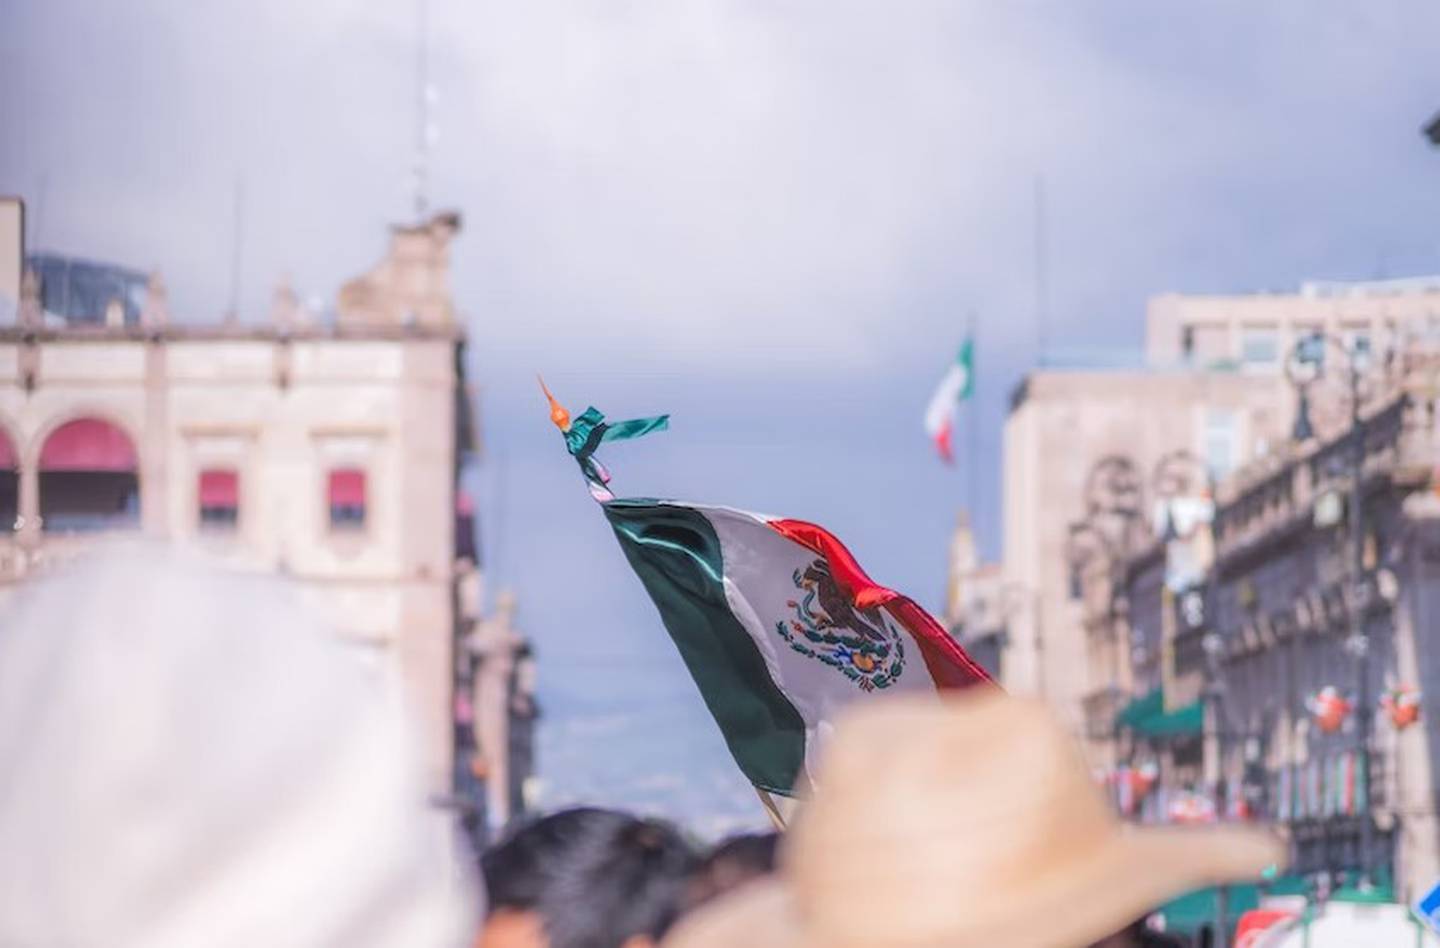 Aunque los mexicanos se sienten orgullosos de su cultura, muchos desearían haber nacido en otro país